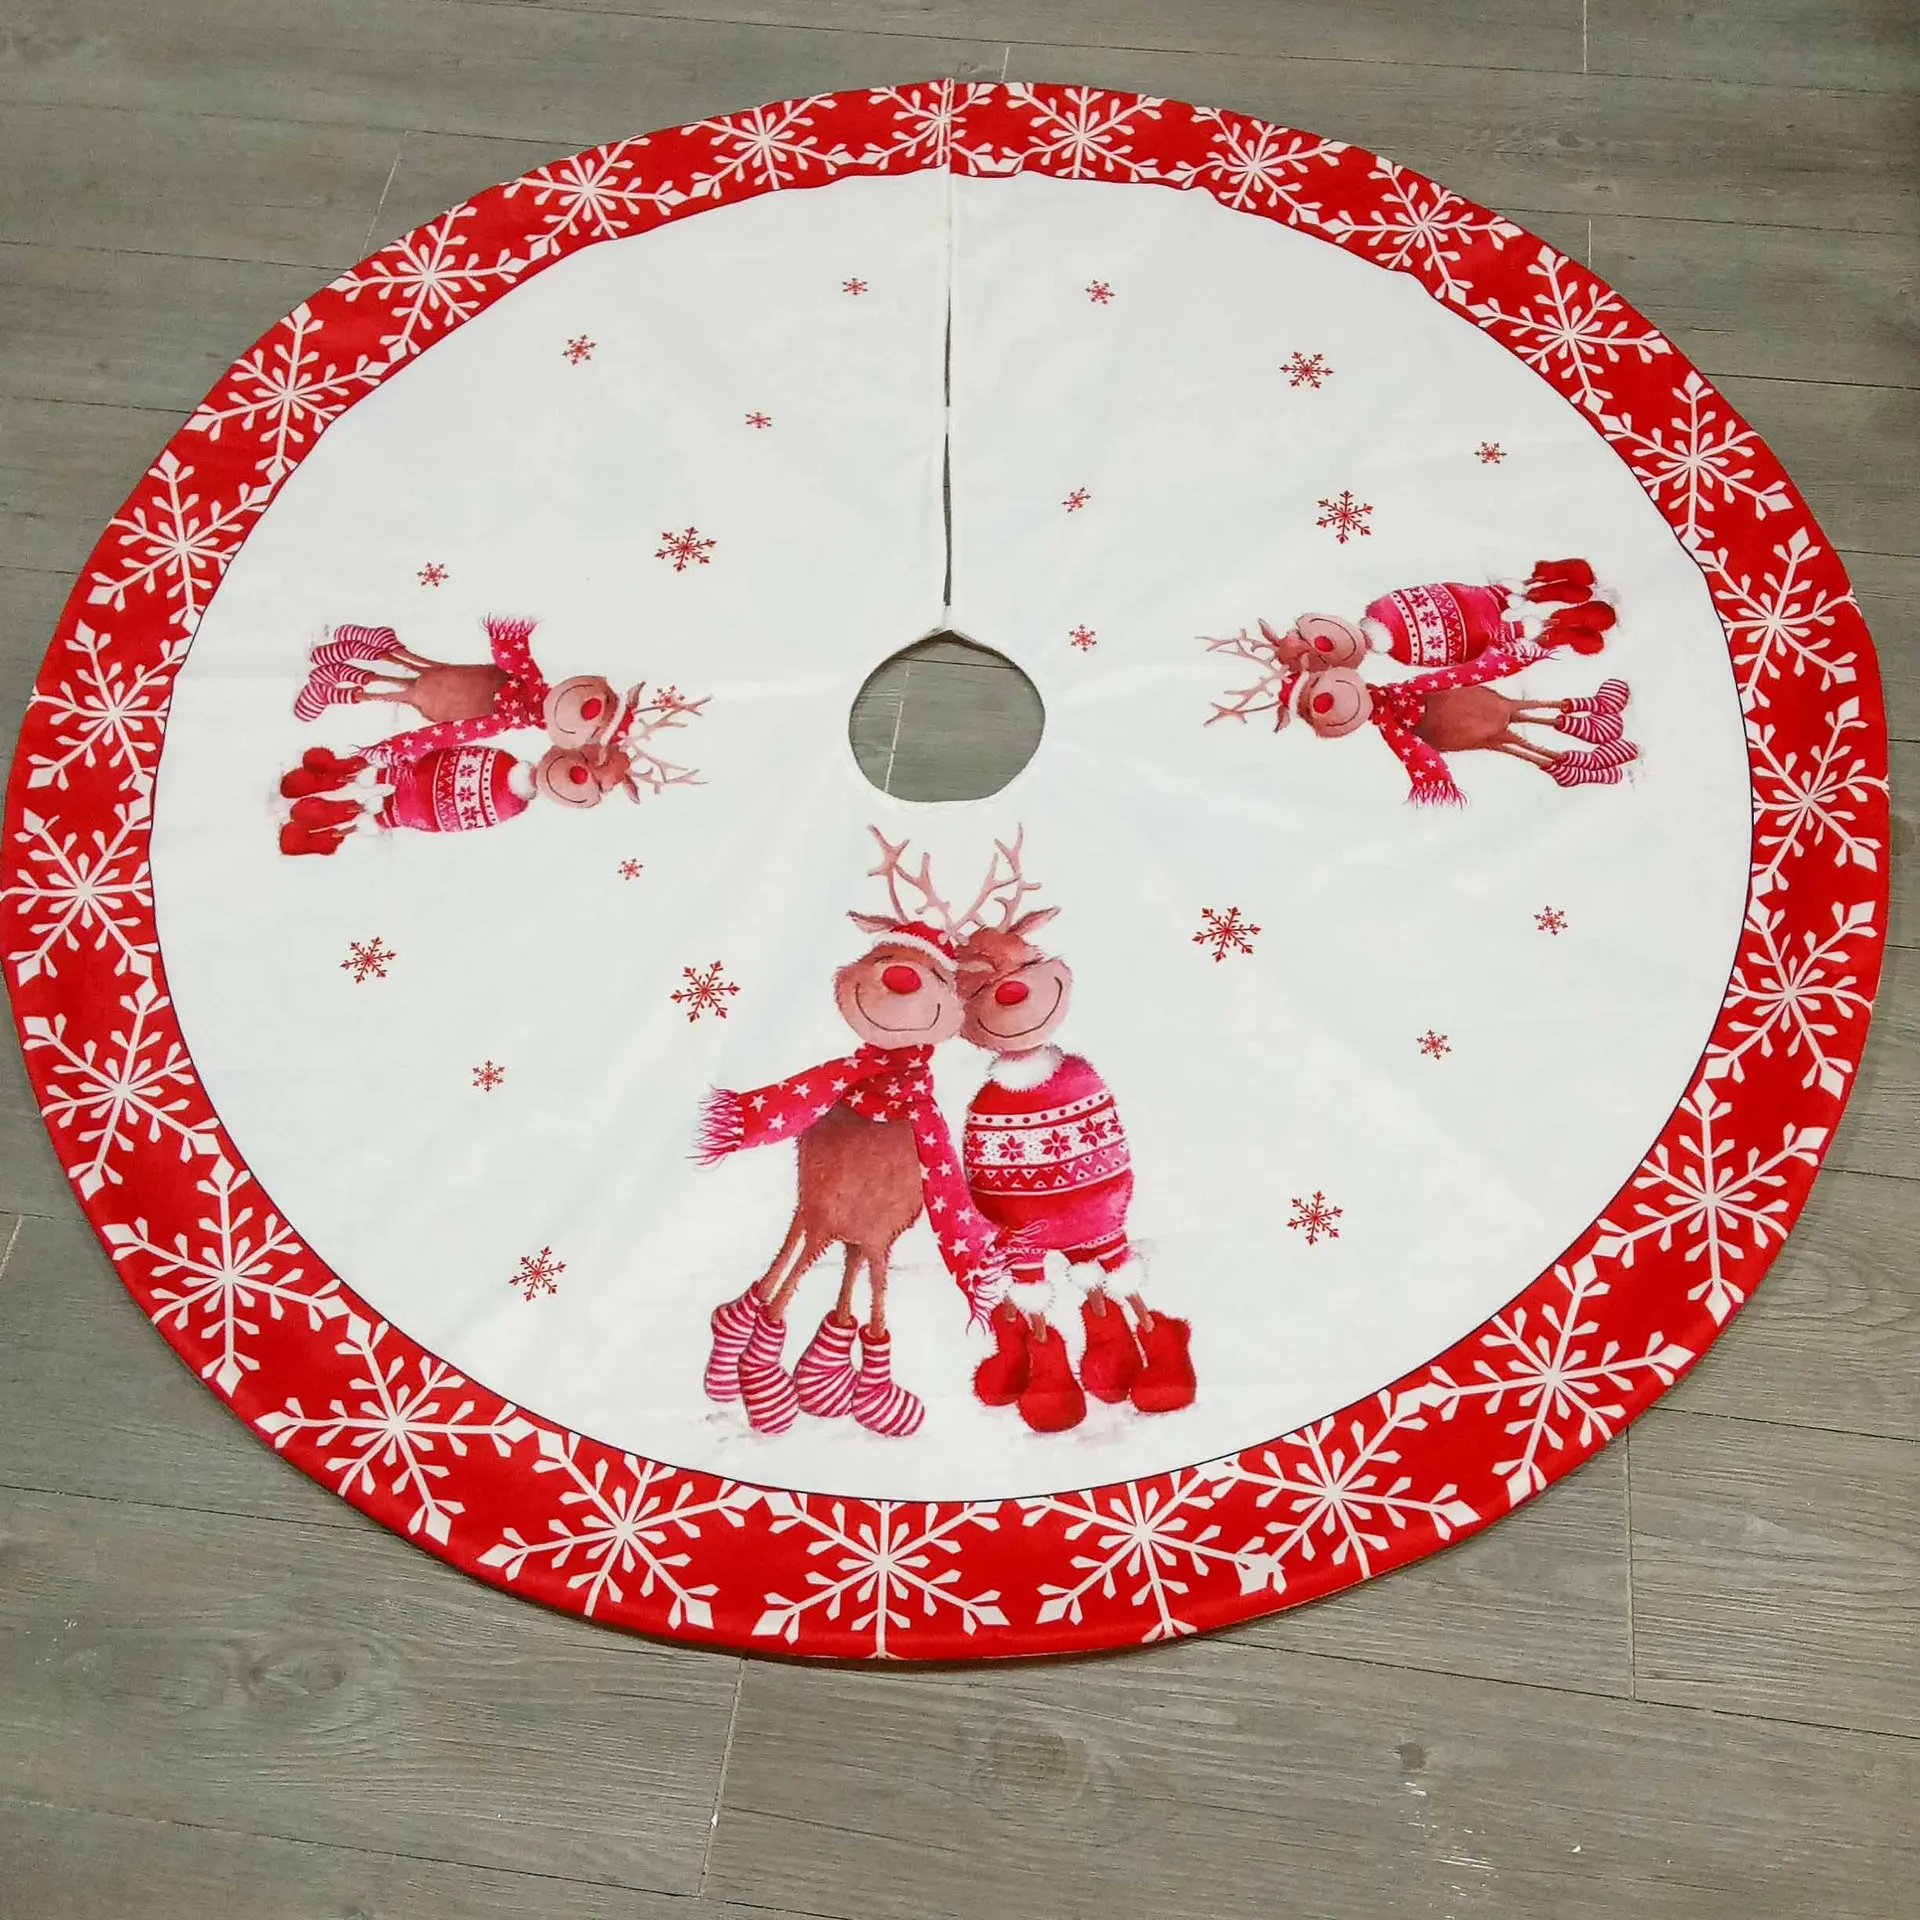 60 см/120 см Рождественская елка юбка подставка украшения основа коврик покрытие дома Рождественские вечерние украшения - Color: elk 120cm